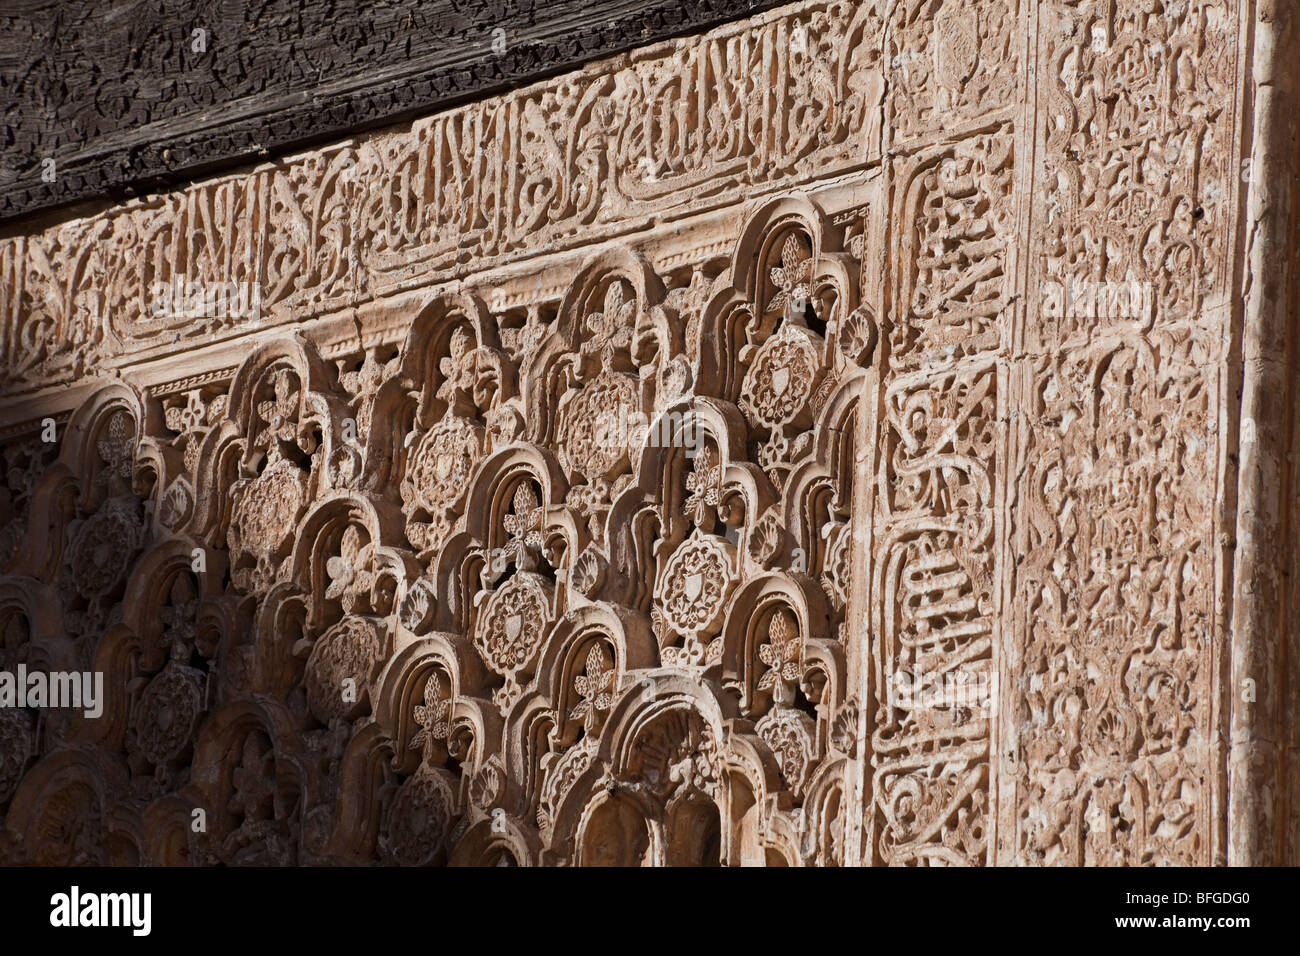 Cour intérieure avec façade décorées de stuc, Cour des Lions, à l'Alhambra, Grenade, Espagne Banque D'Images